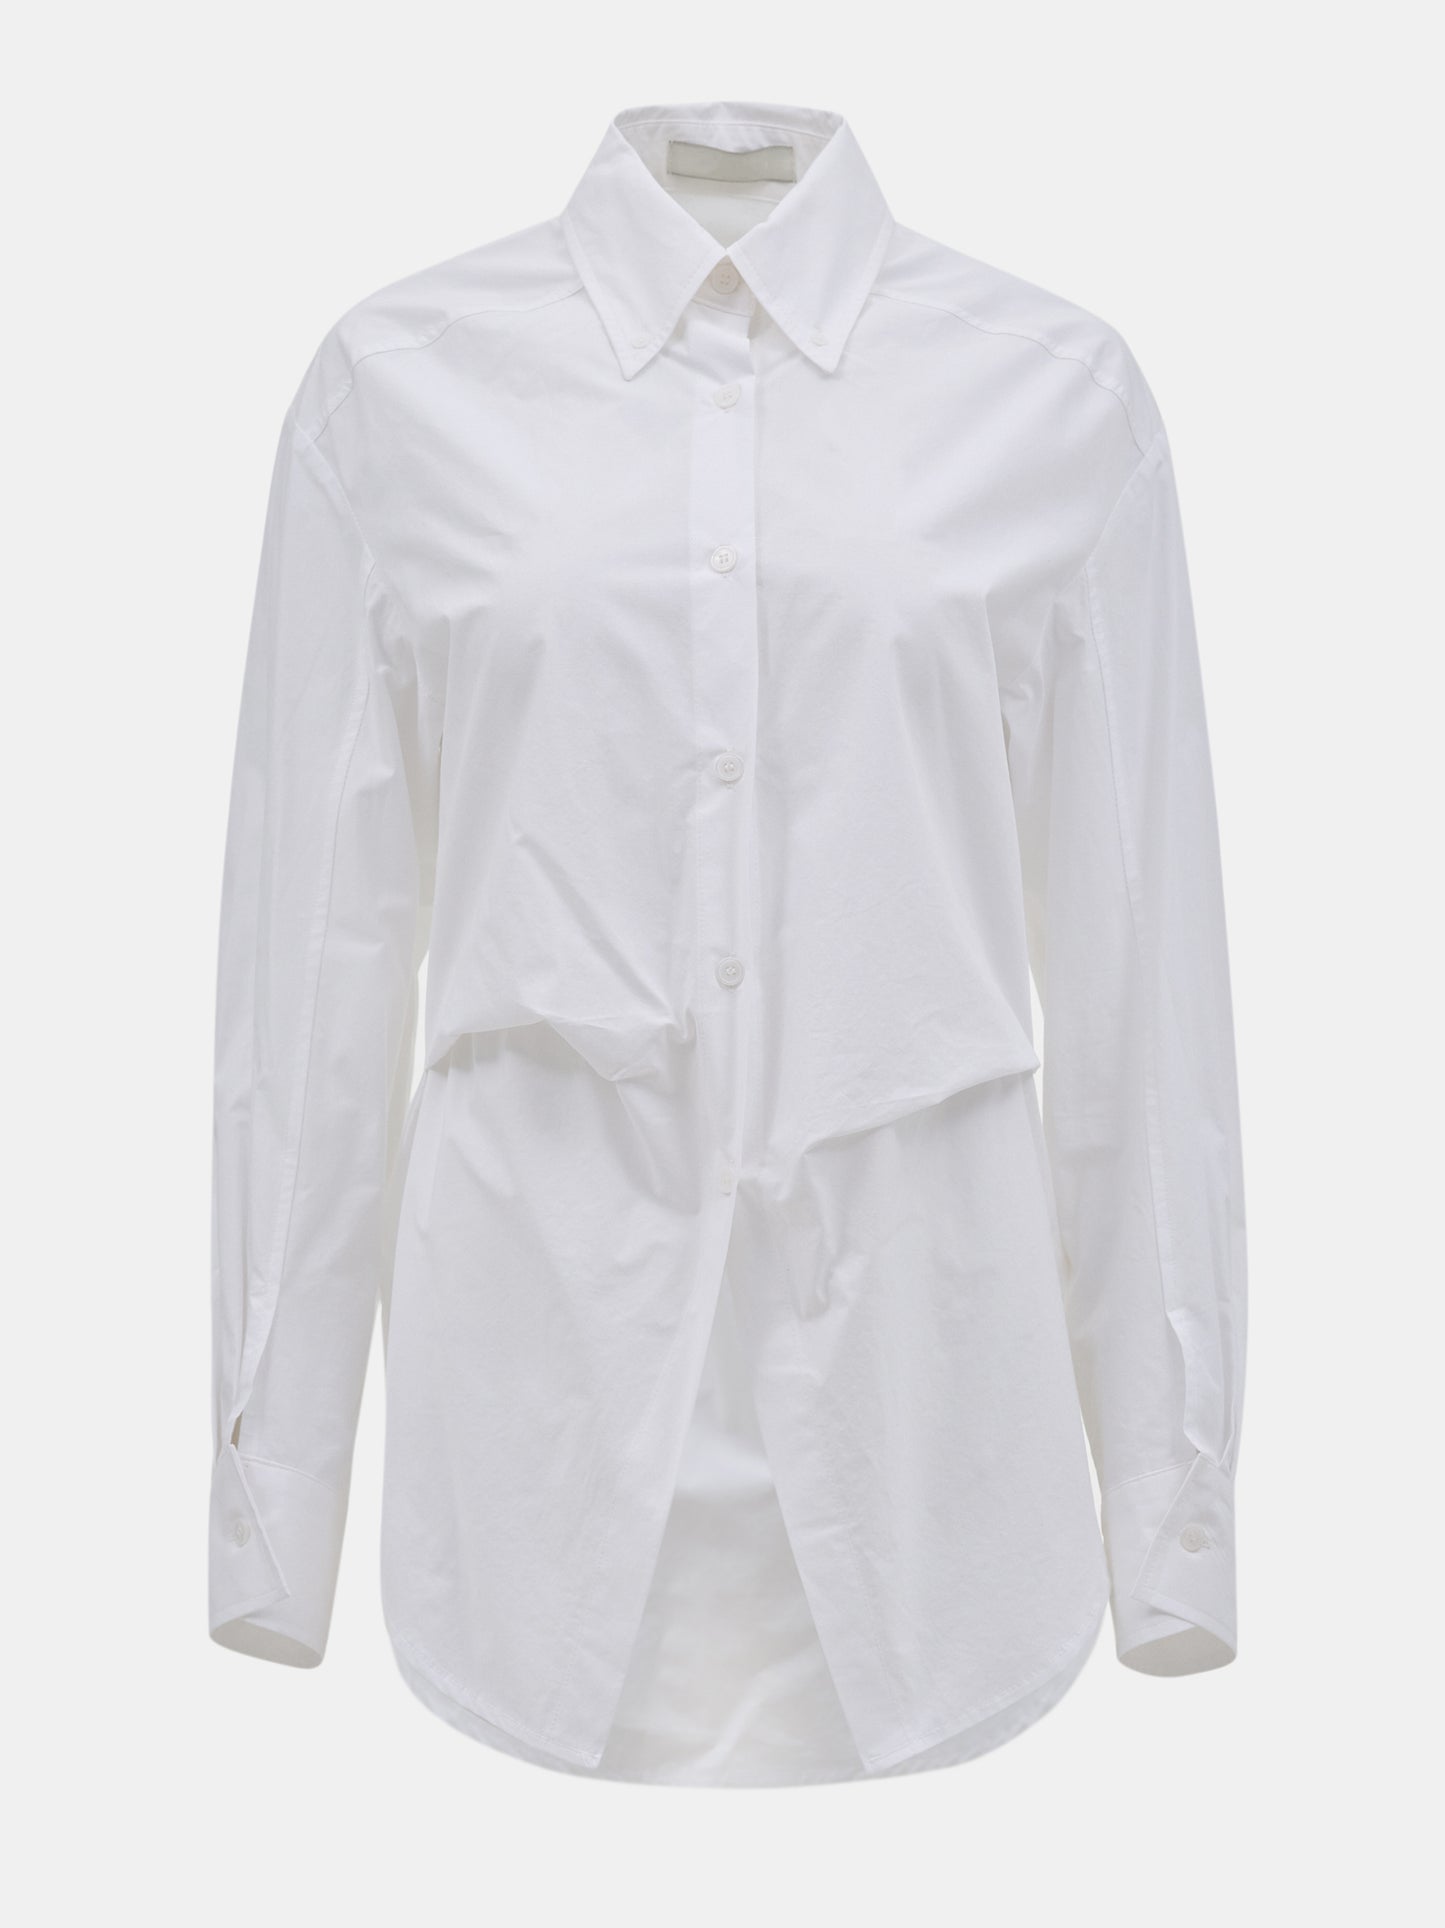 Tucked Crisp Shirt, White